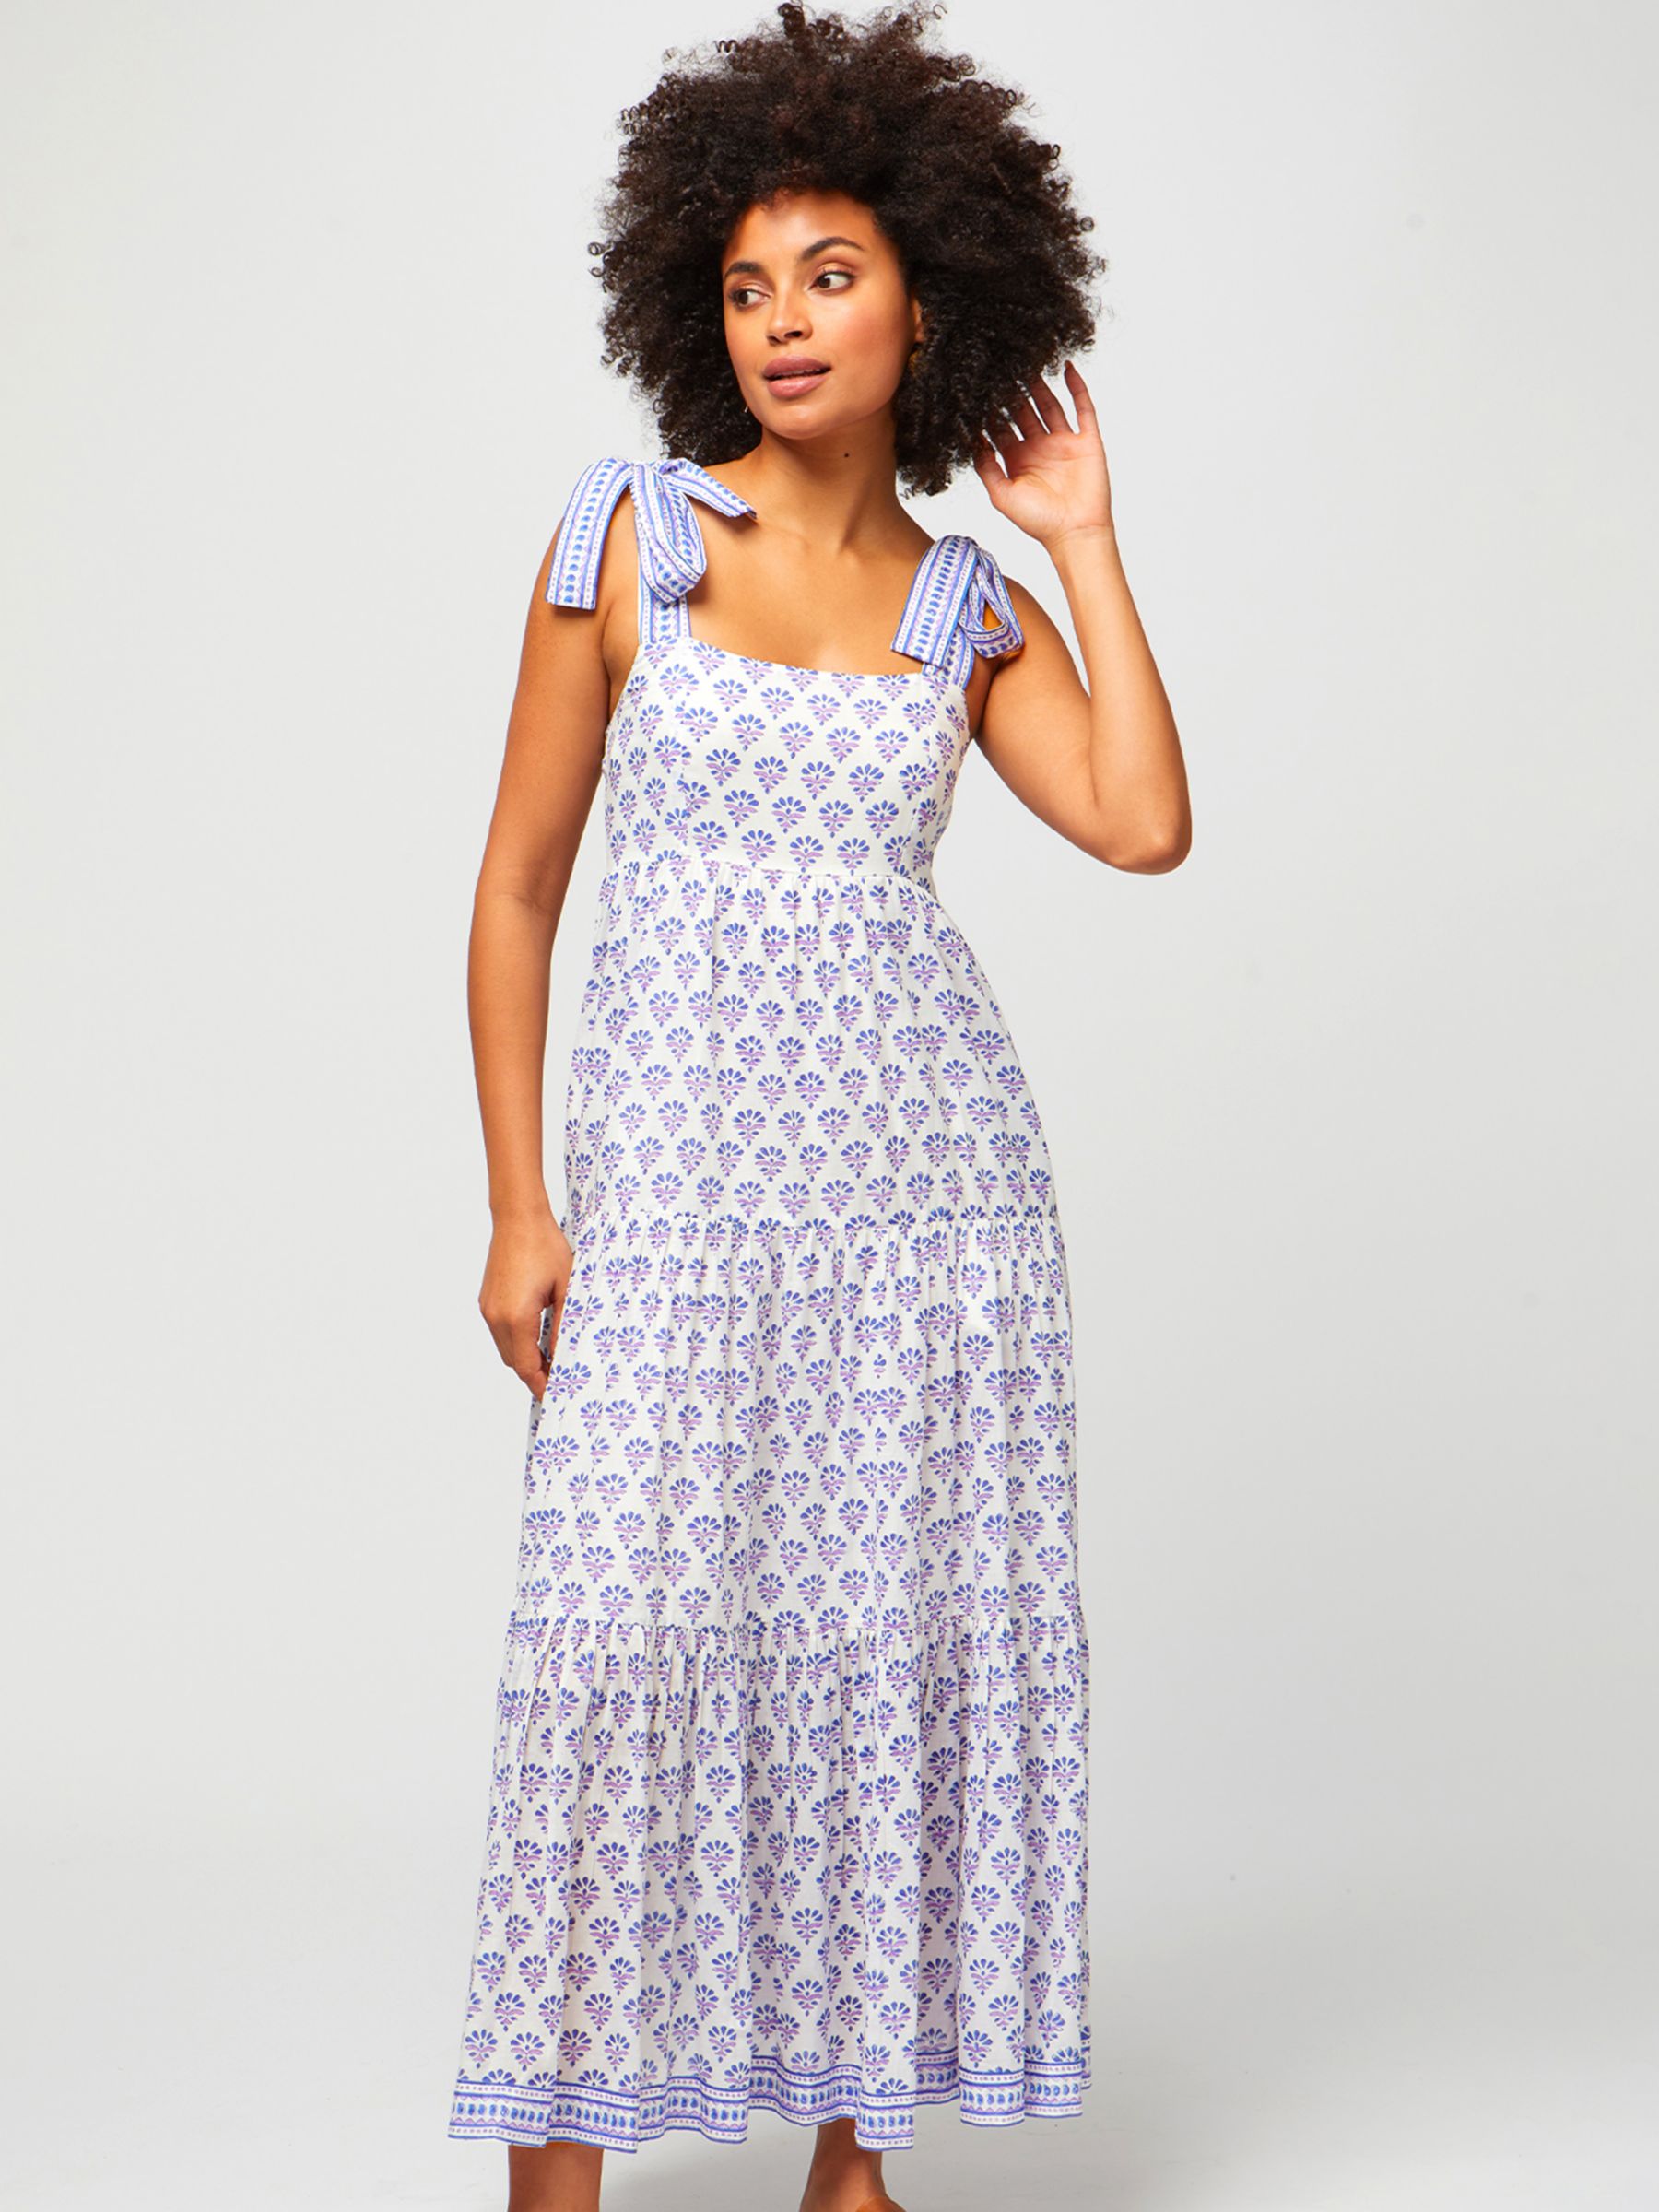 Aspiga Tabitha Block Print Cotton Maxi Dress, Purple/Blue, XXL